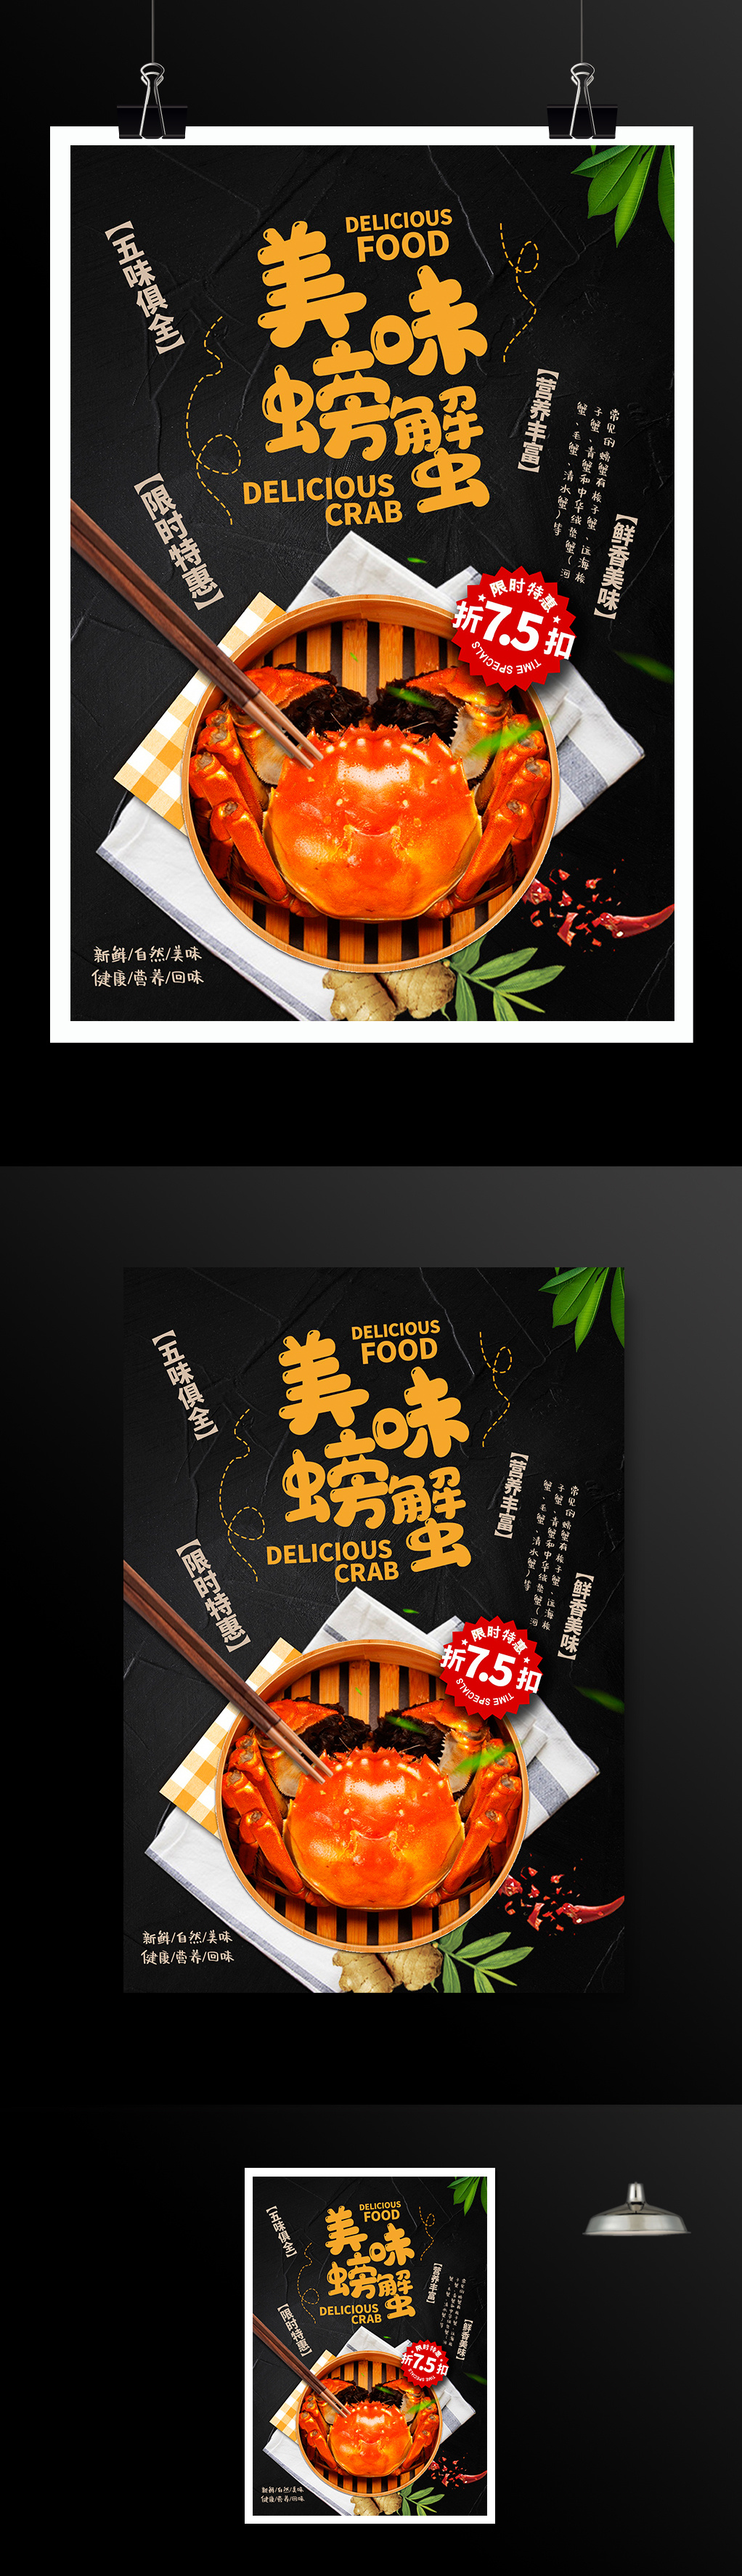 黑色大气美味螃蟹美食宣传海报设计